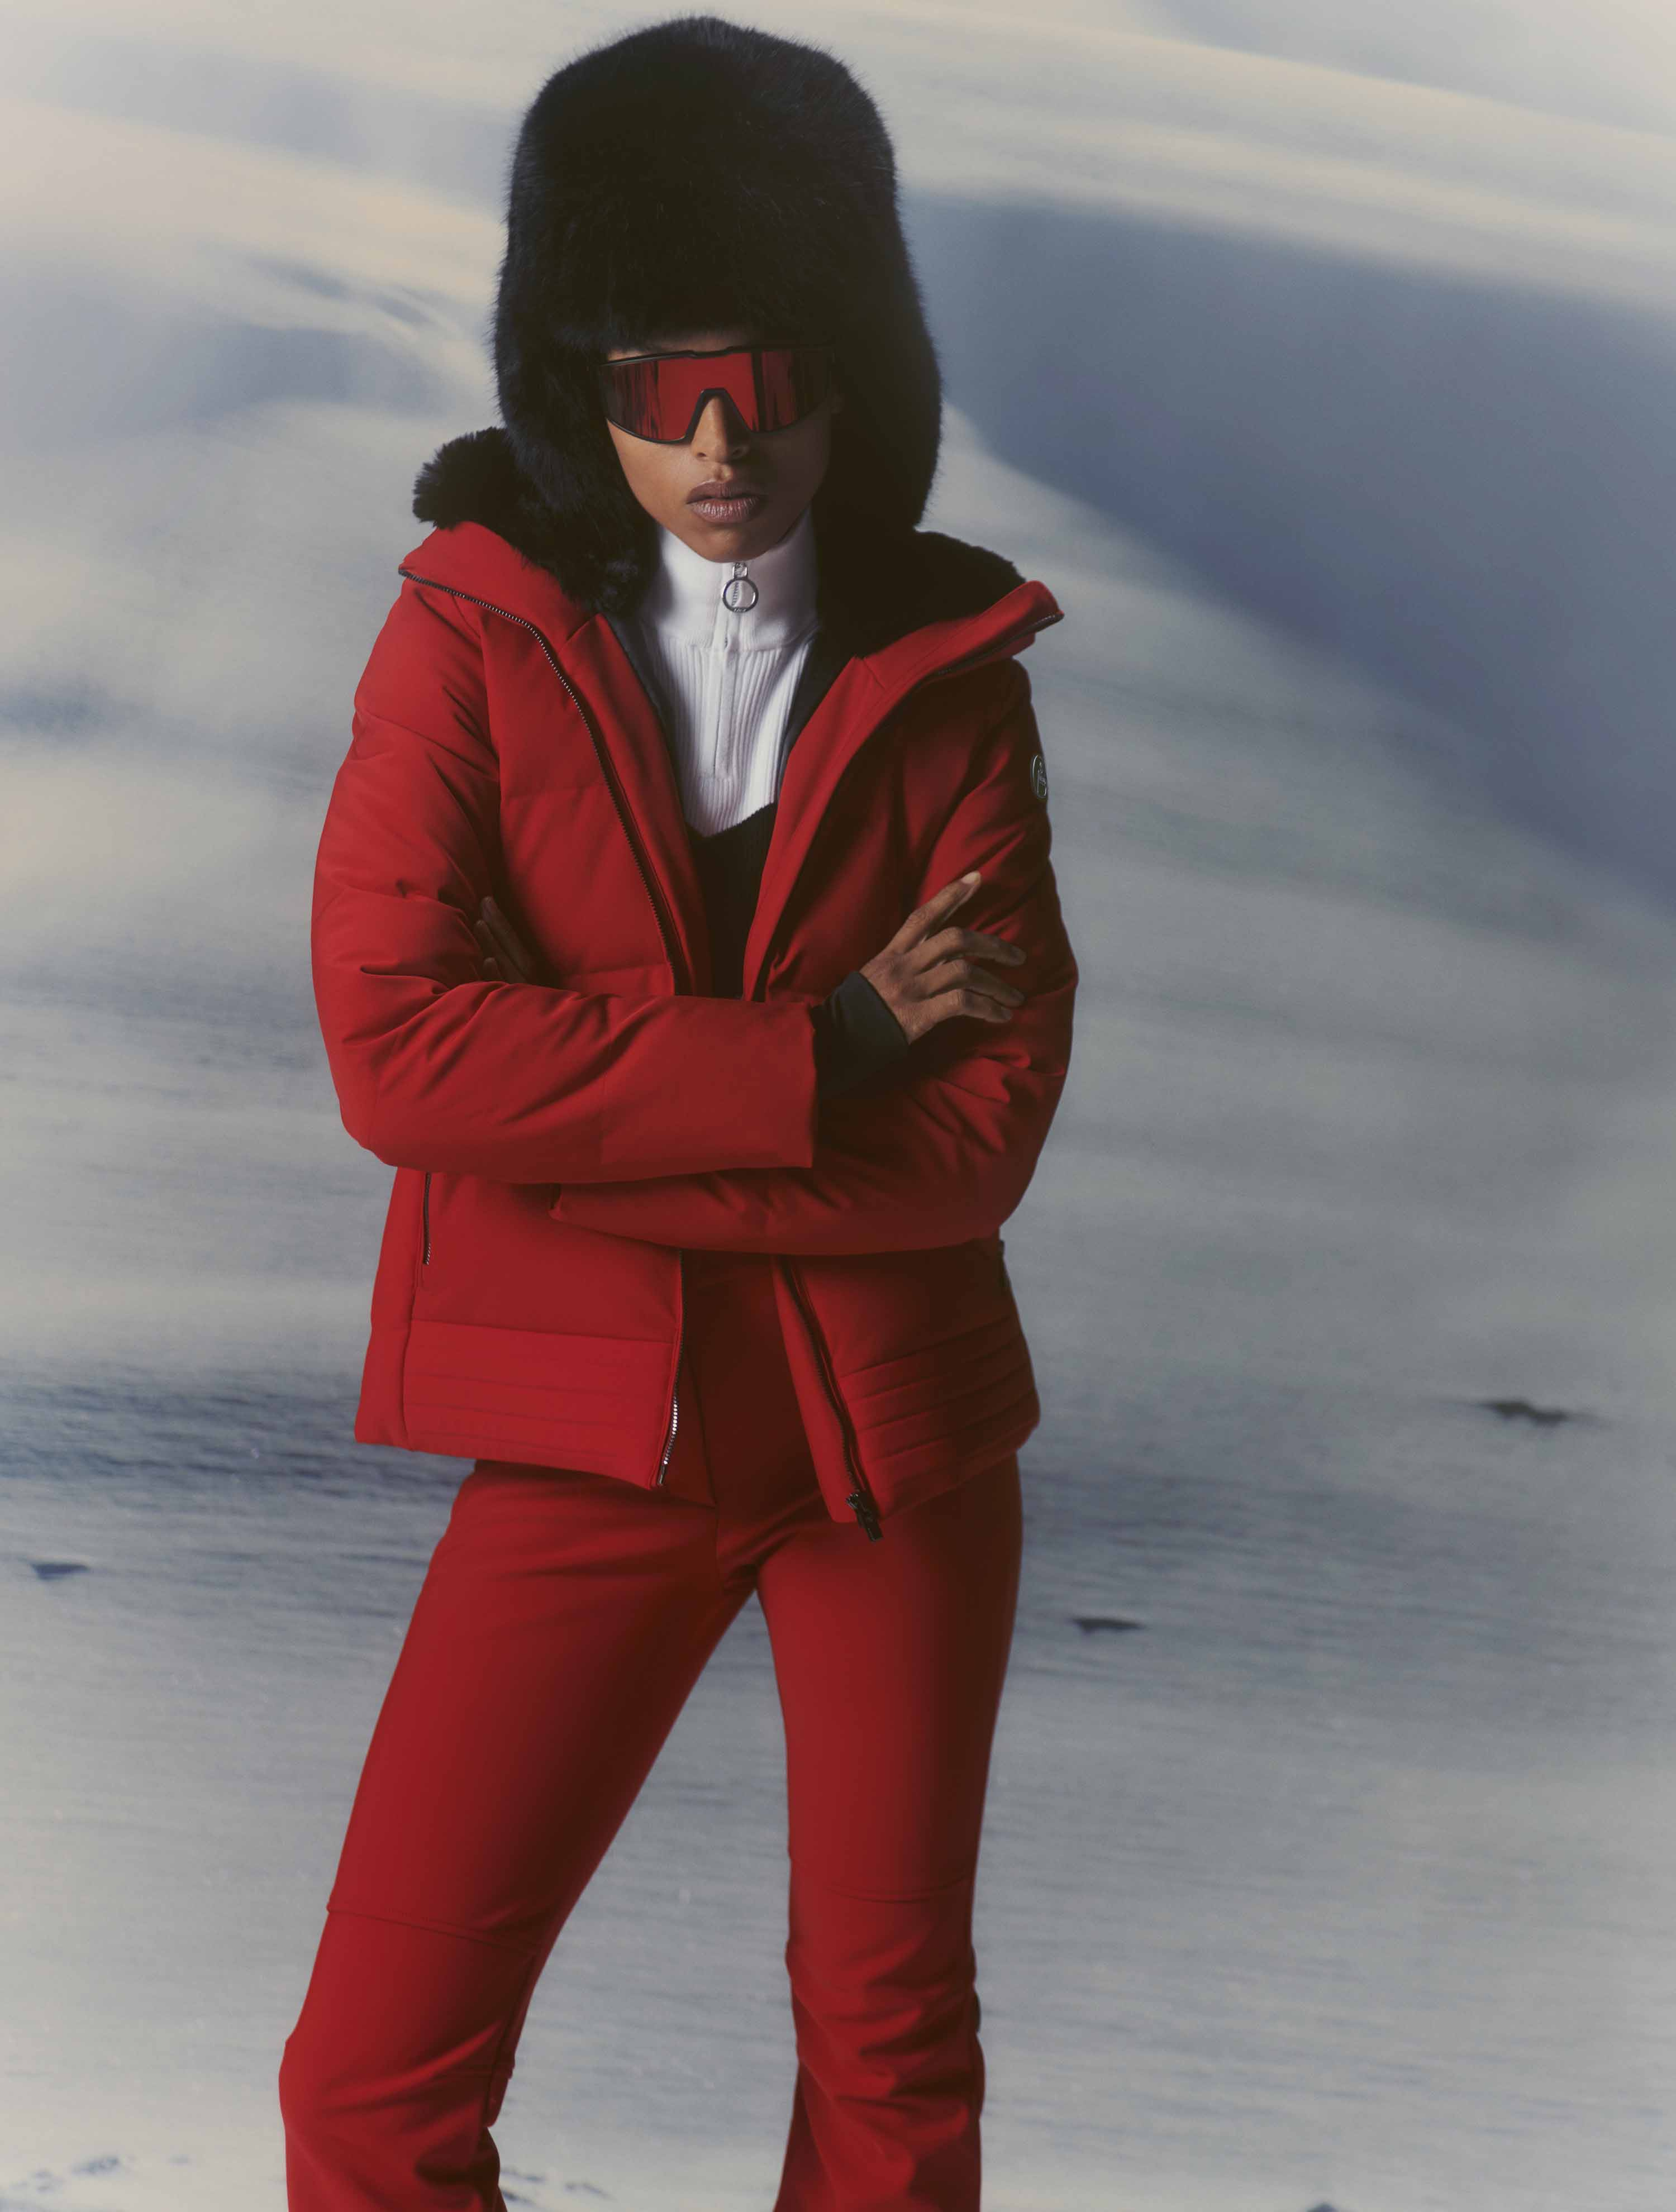 Elancia fitted fuseau ski pants